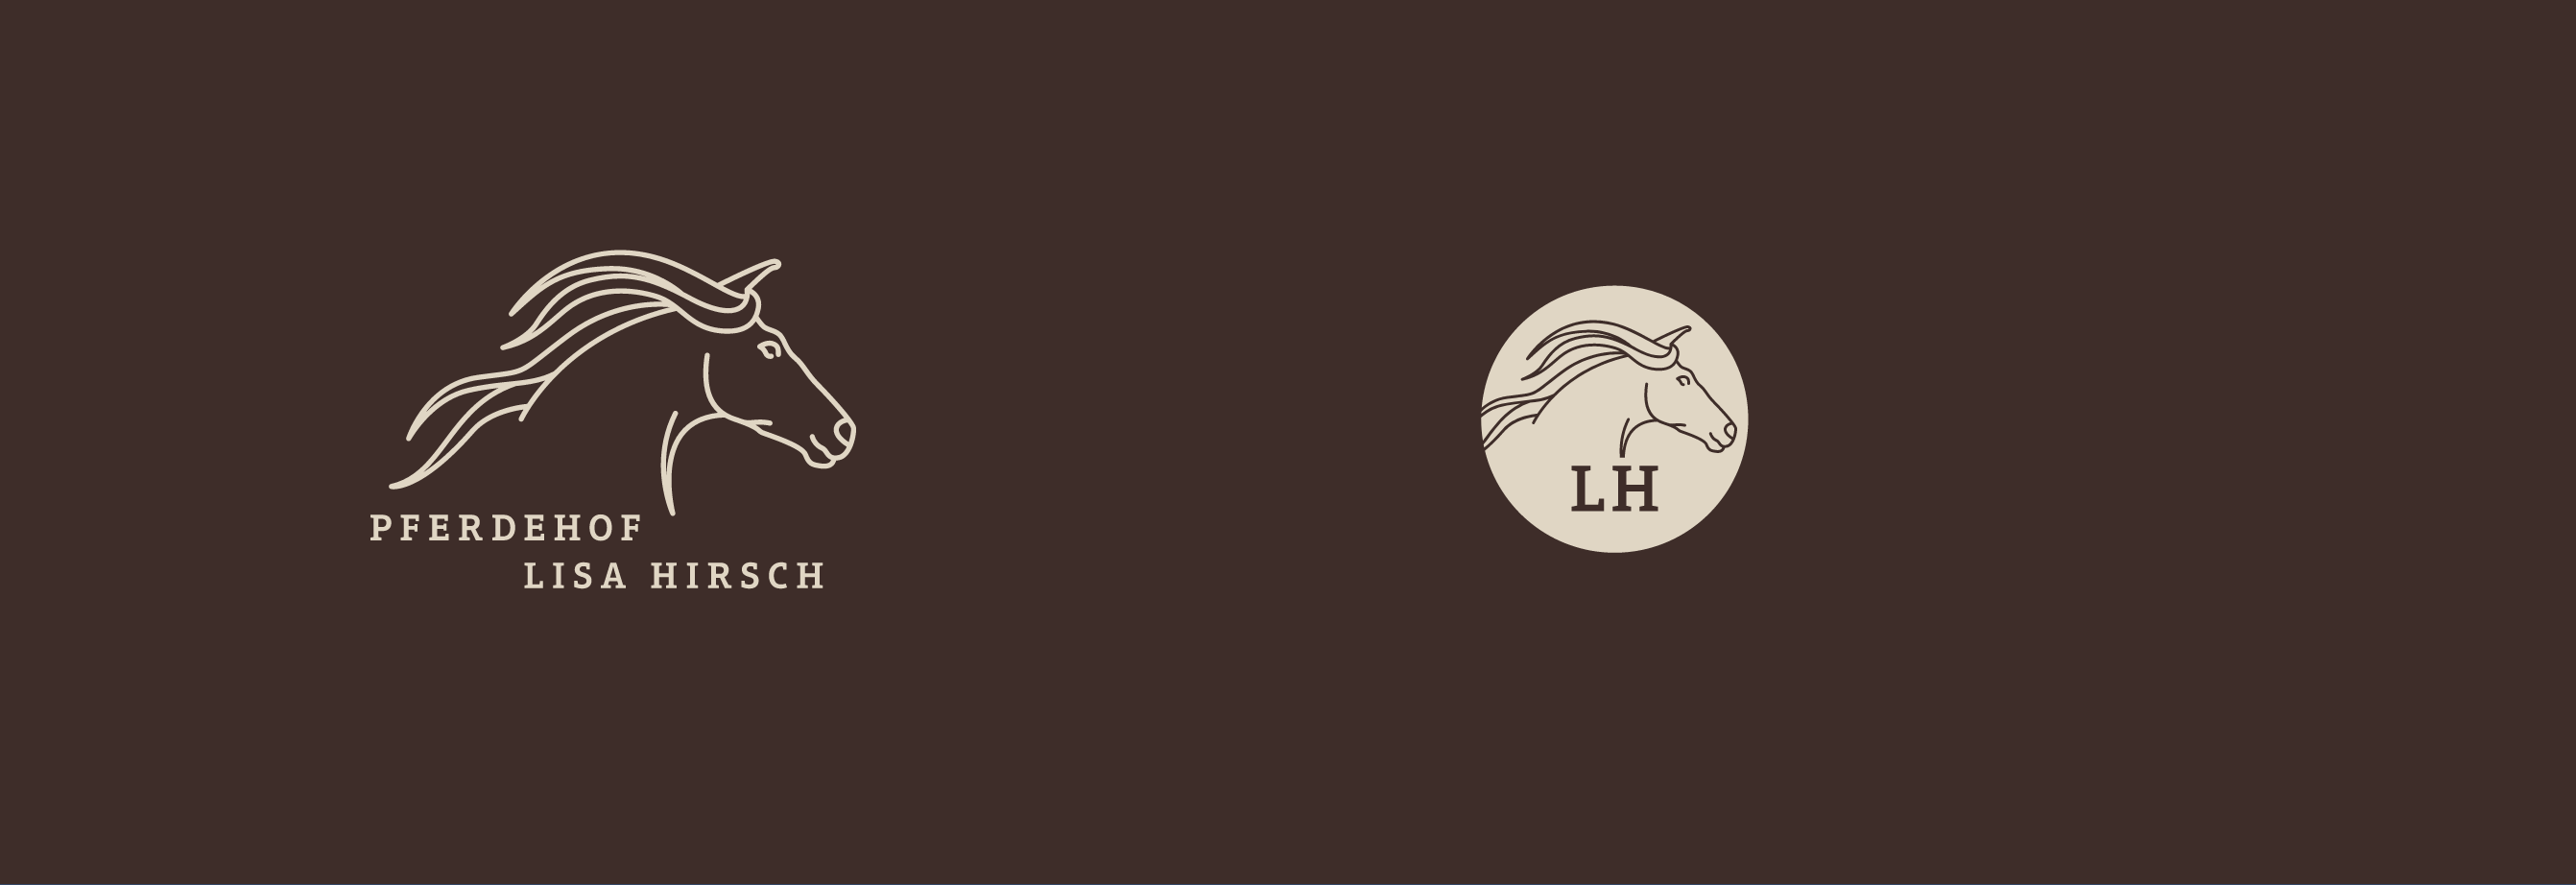 Logo und Signet auf dunklem Hintergrund | Pferdehof Lisa Hirsch | miratheresia designstudio